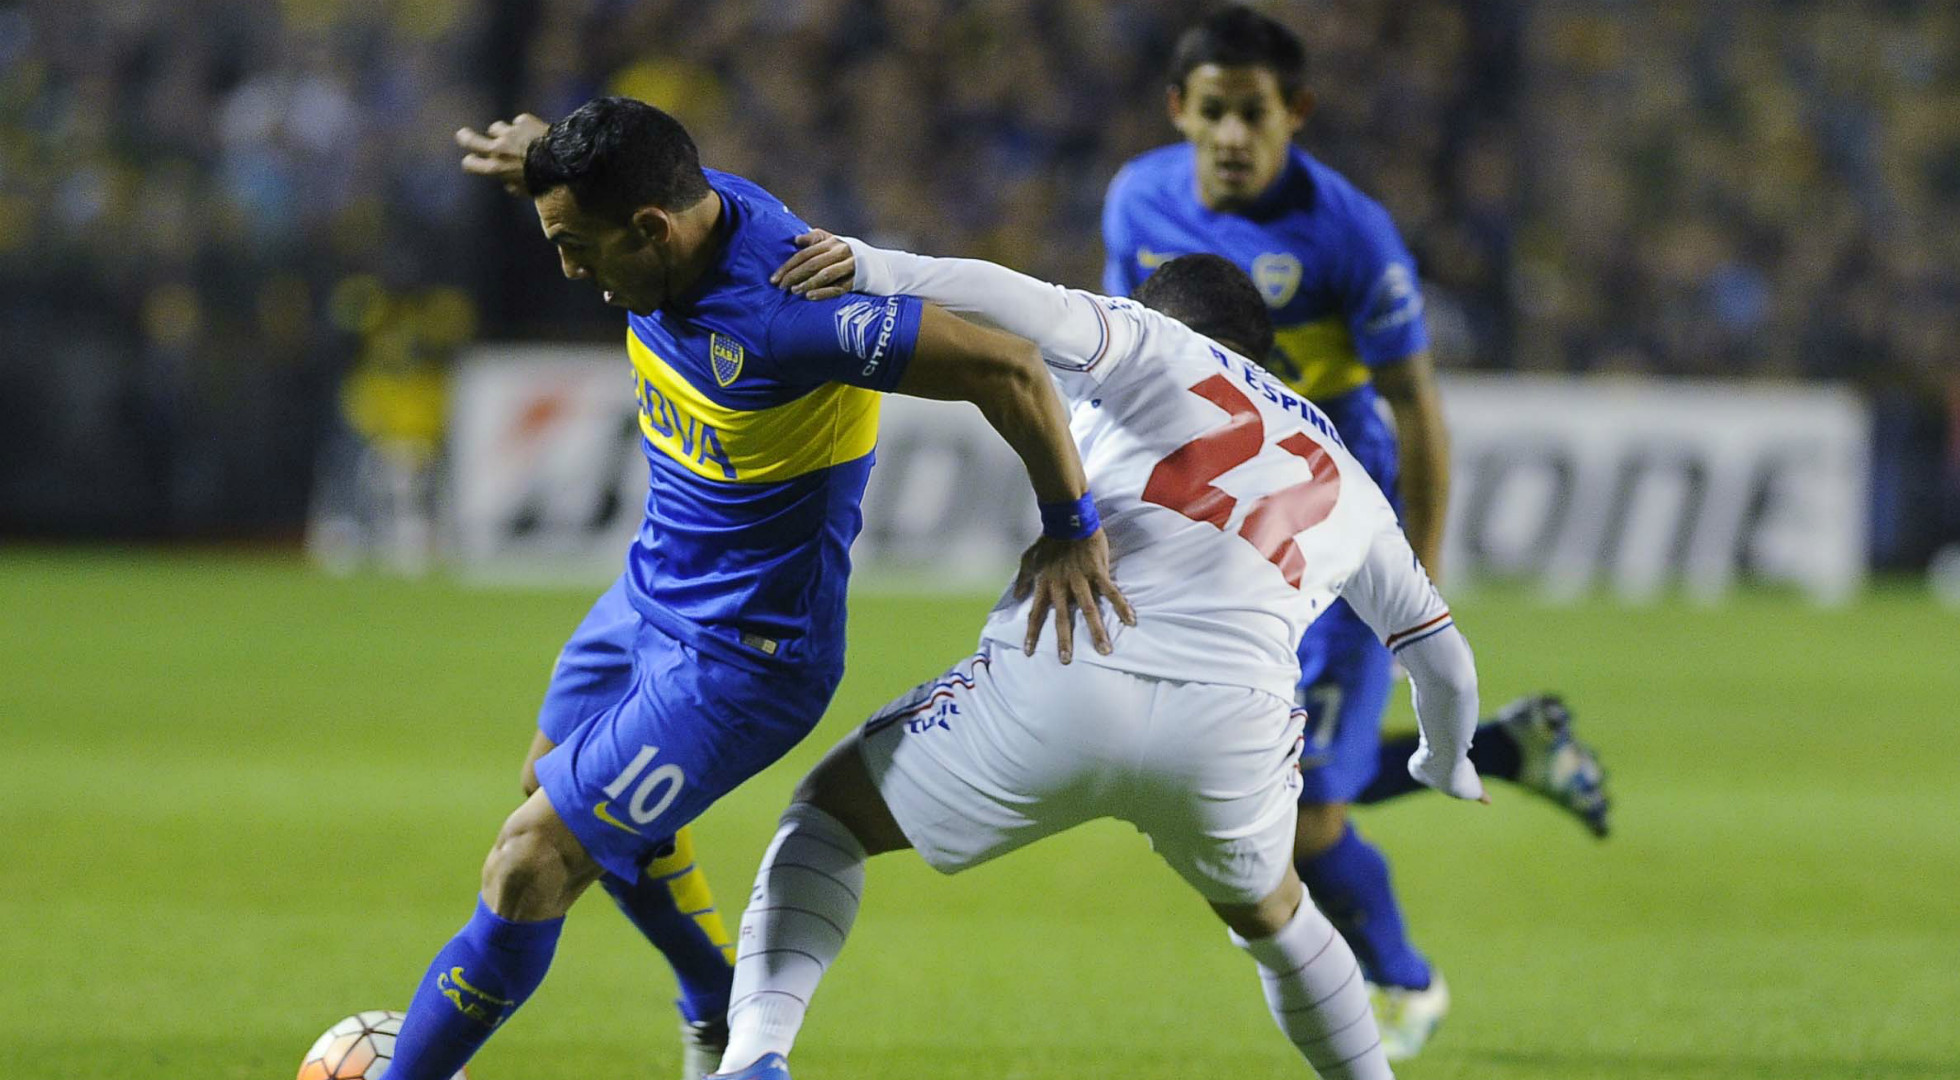 LIBERTADORES: Boca leva nos pênaltis e Atlético Nacional classifica heroicamente